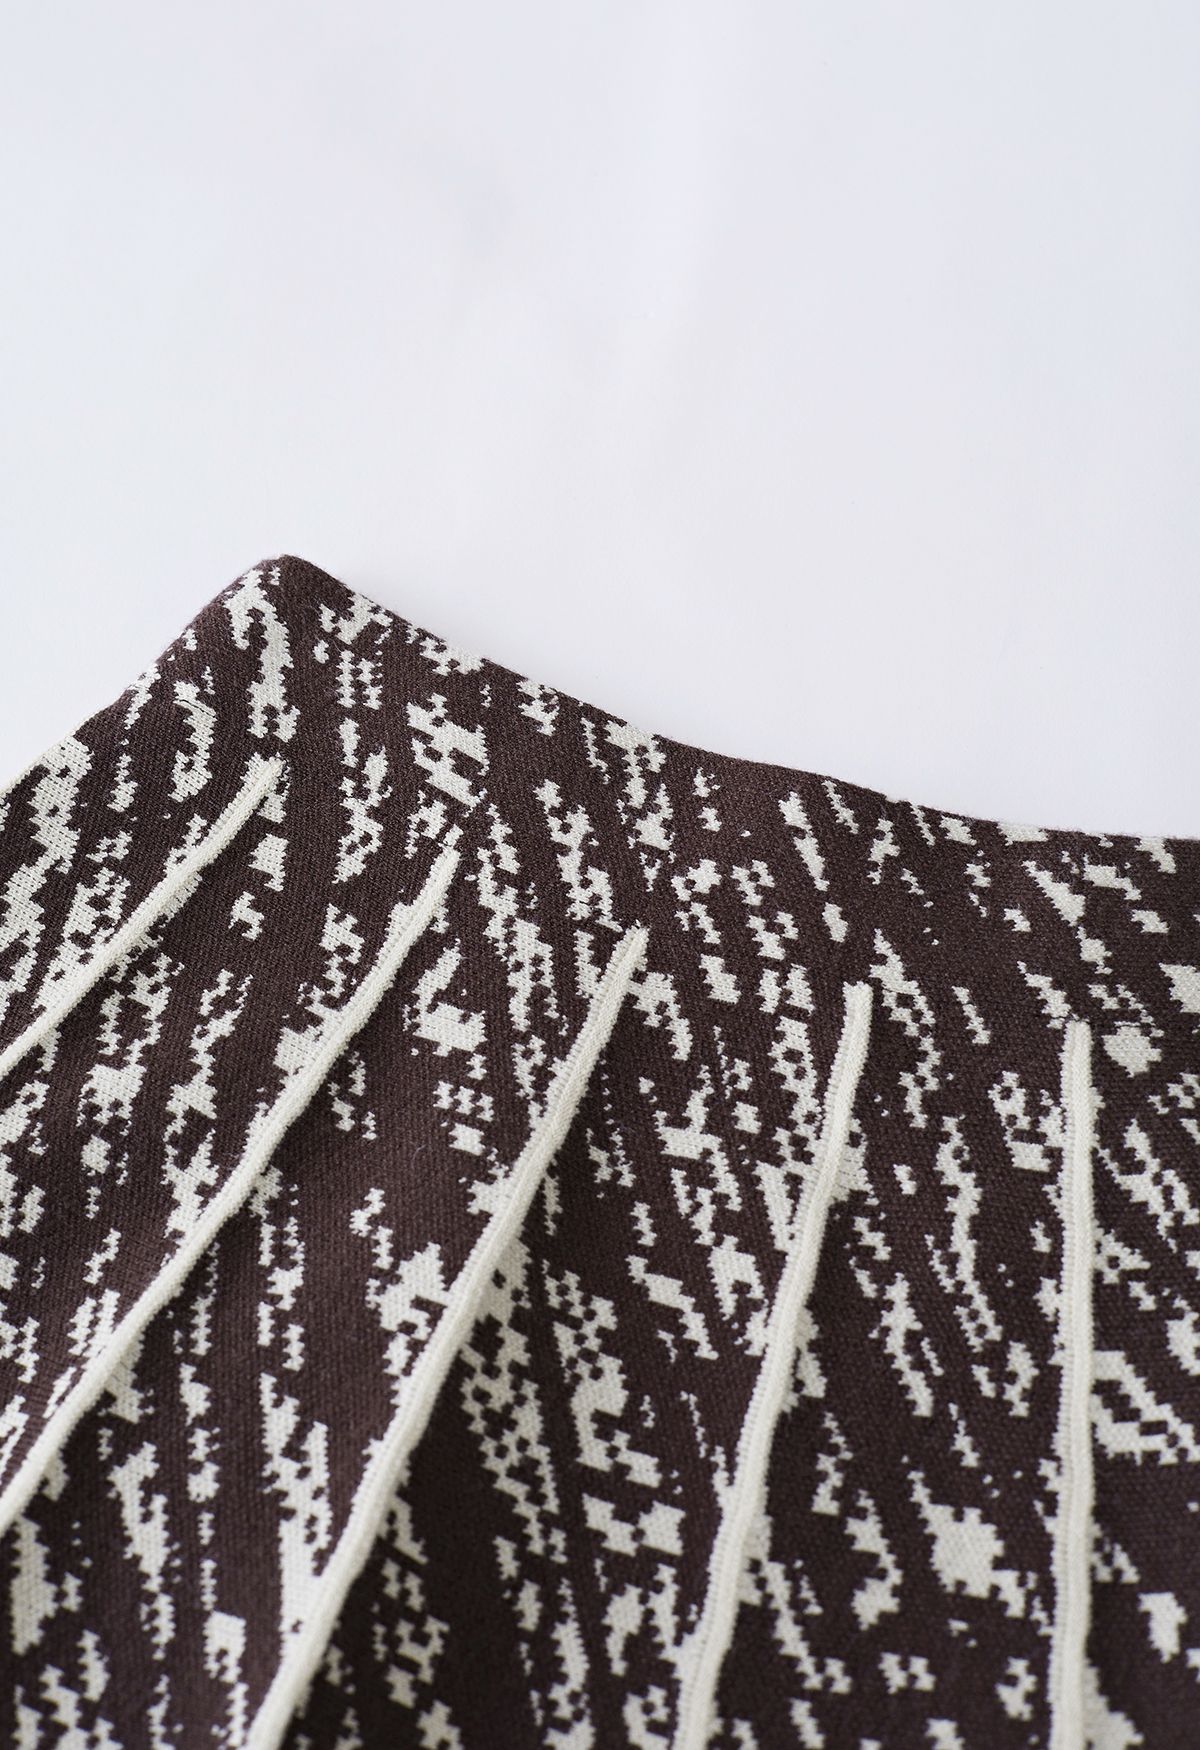 Falda de punto plisada con dobladillo en contraste en color crema